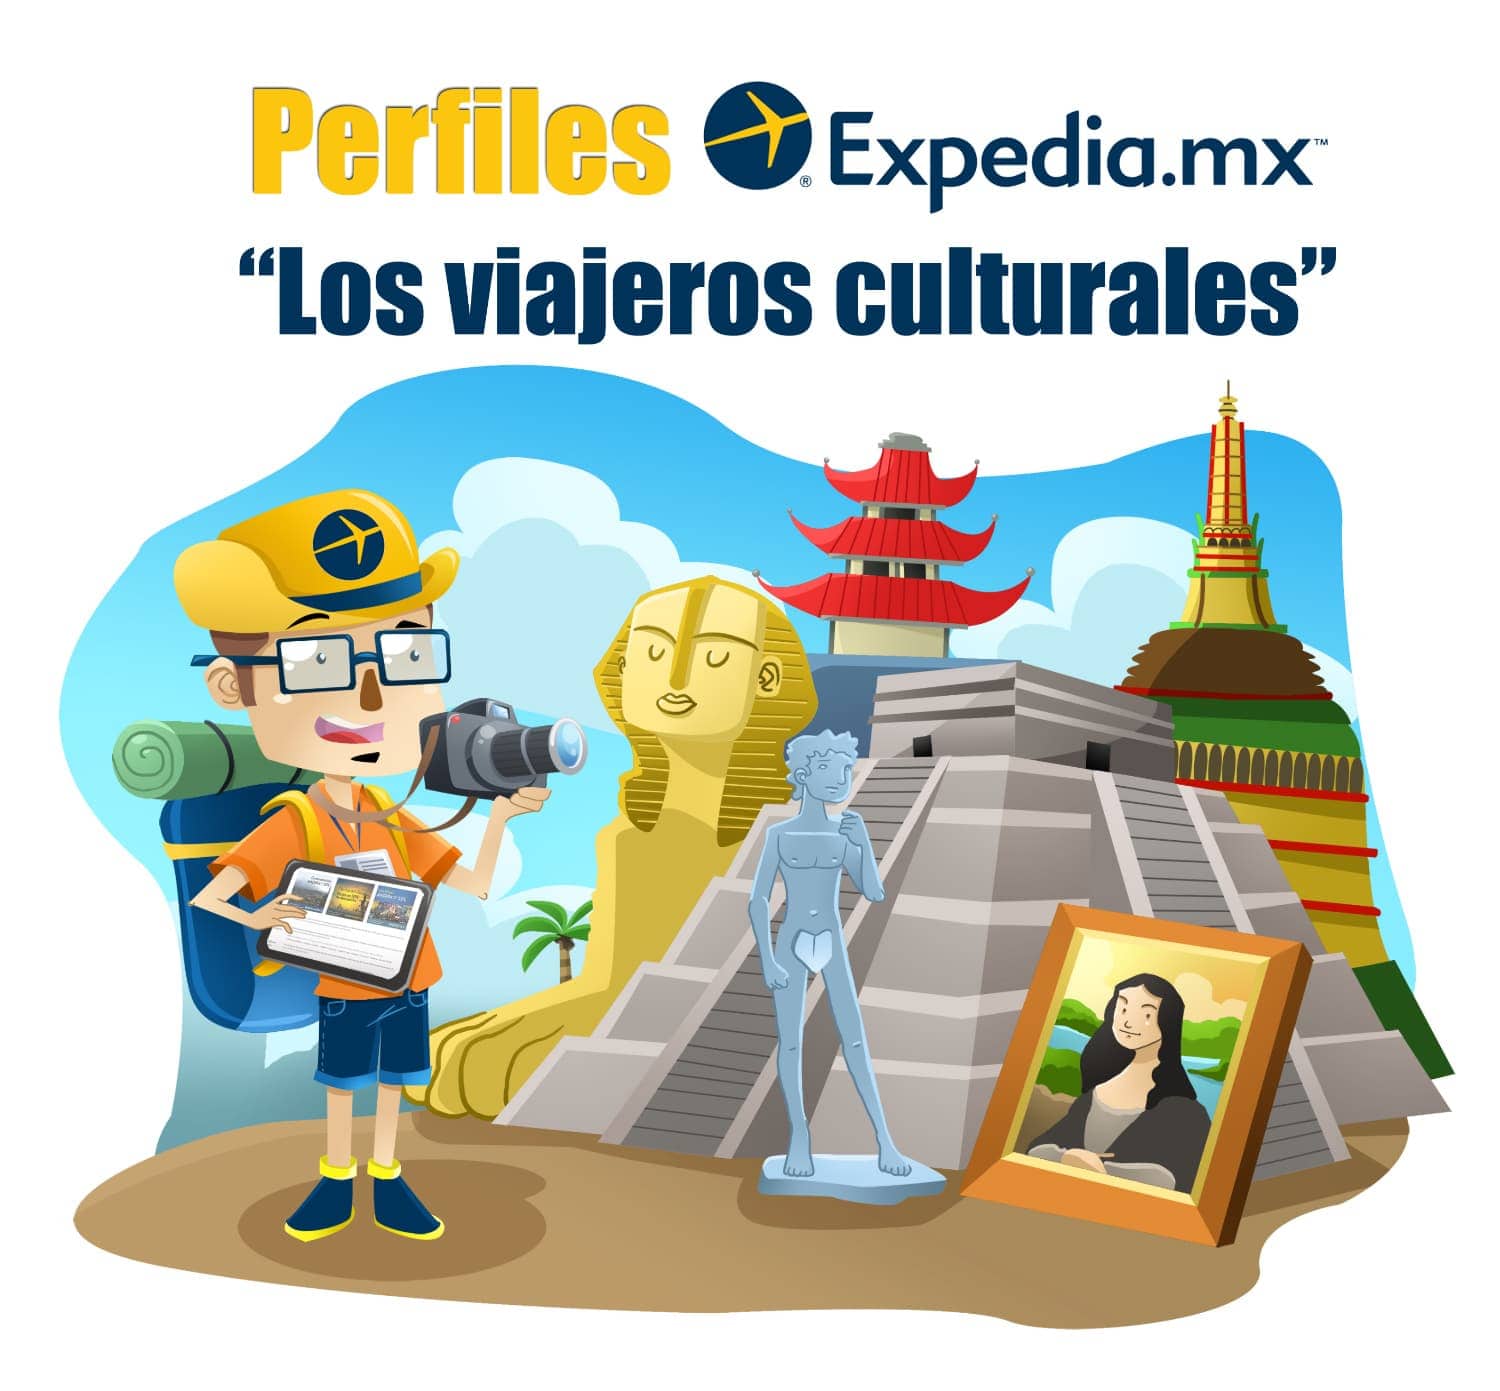 Perfiles Expedia.mx culturales” Para que cada viaje es una nueva de arte | Expedia